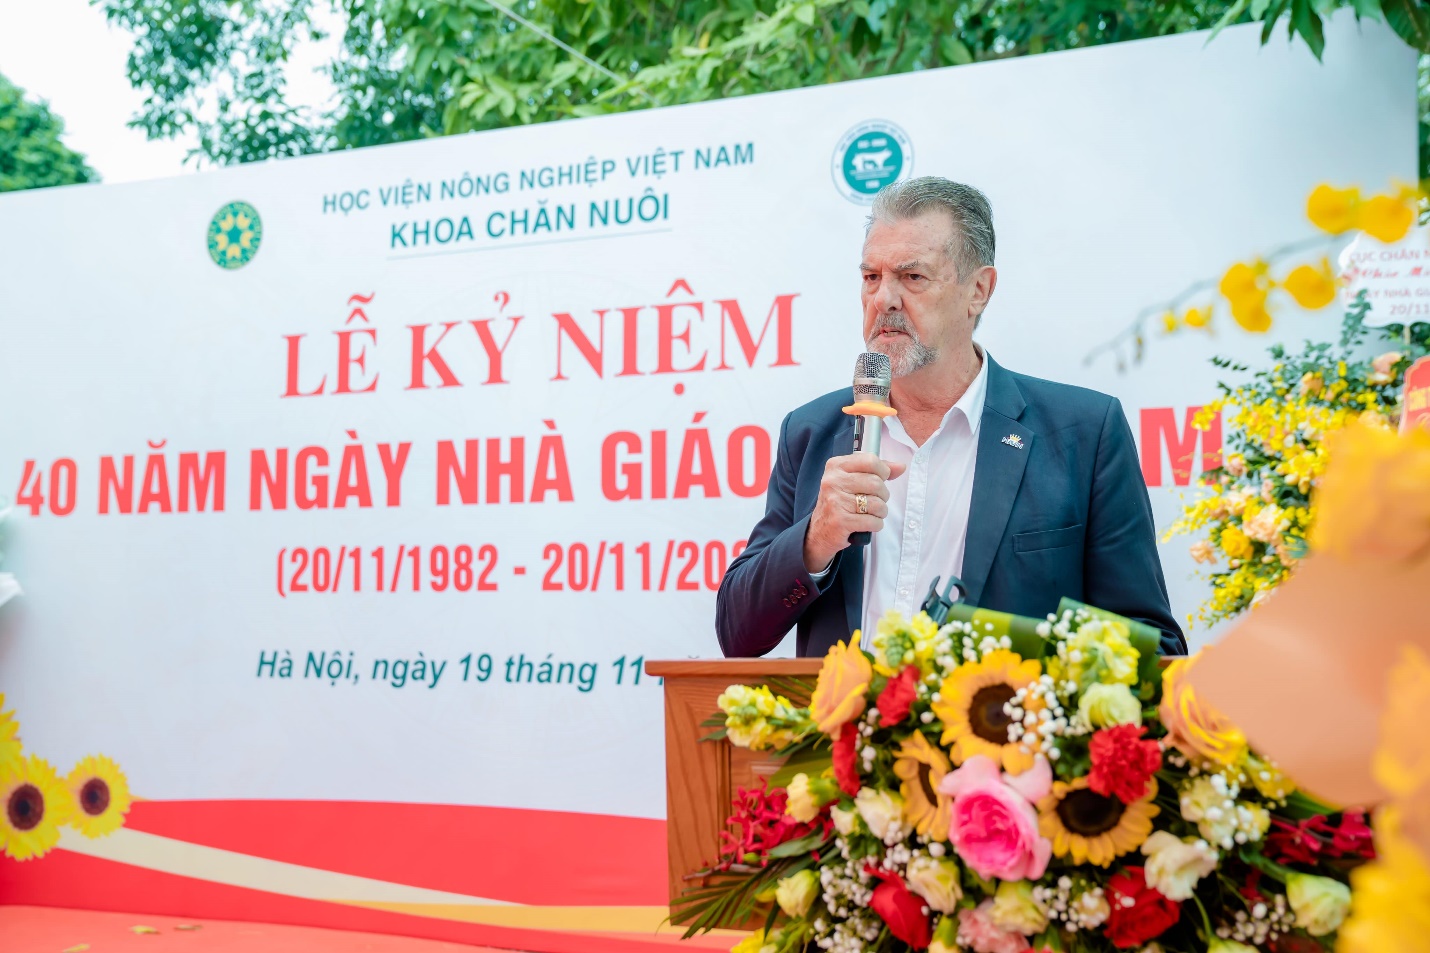 Mavin đóng góp nhiều trong đào tạo nhân lực ngành Chăn nuôi Việt Nam - Ảnh 2.